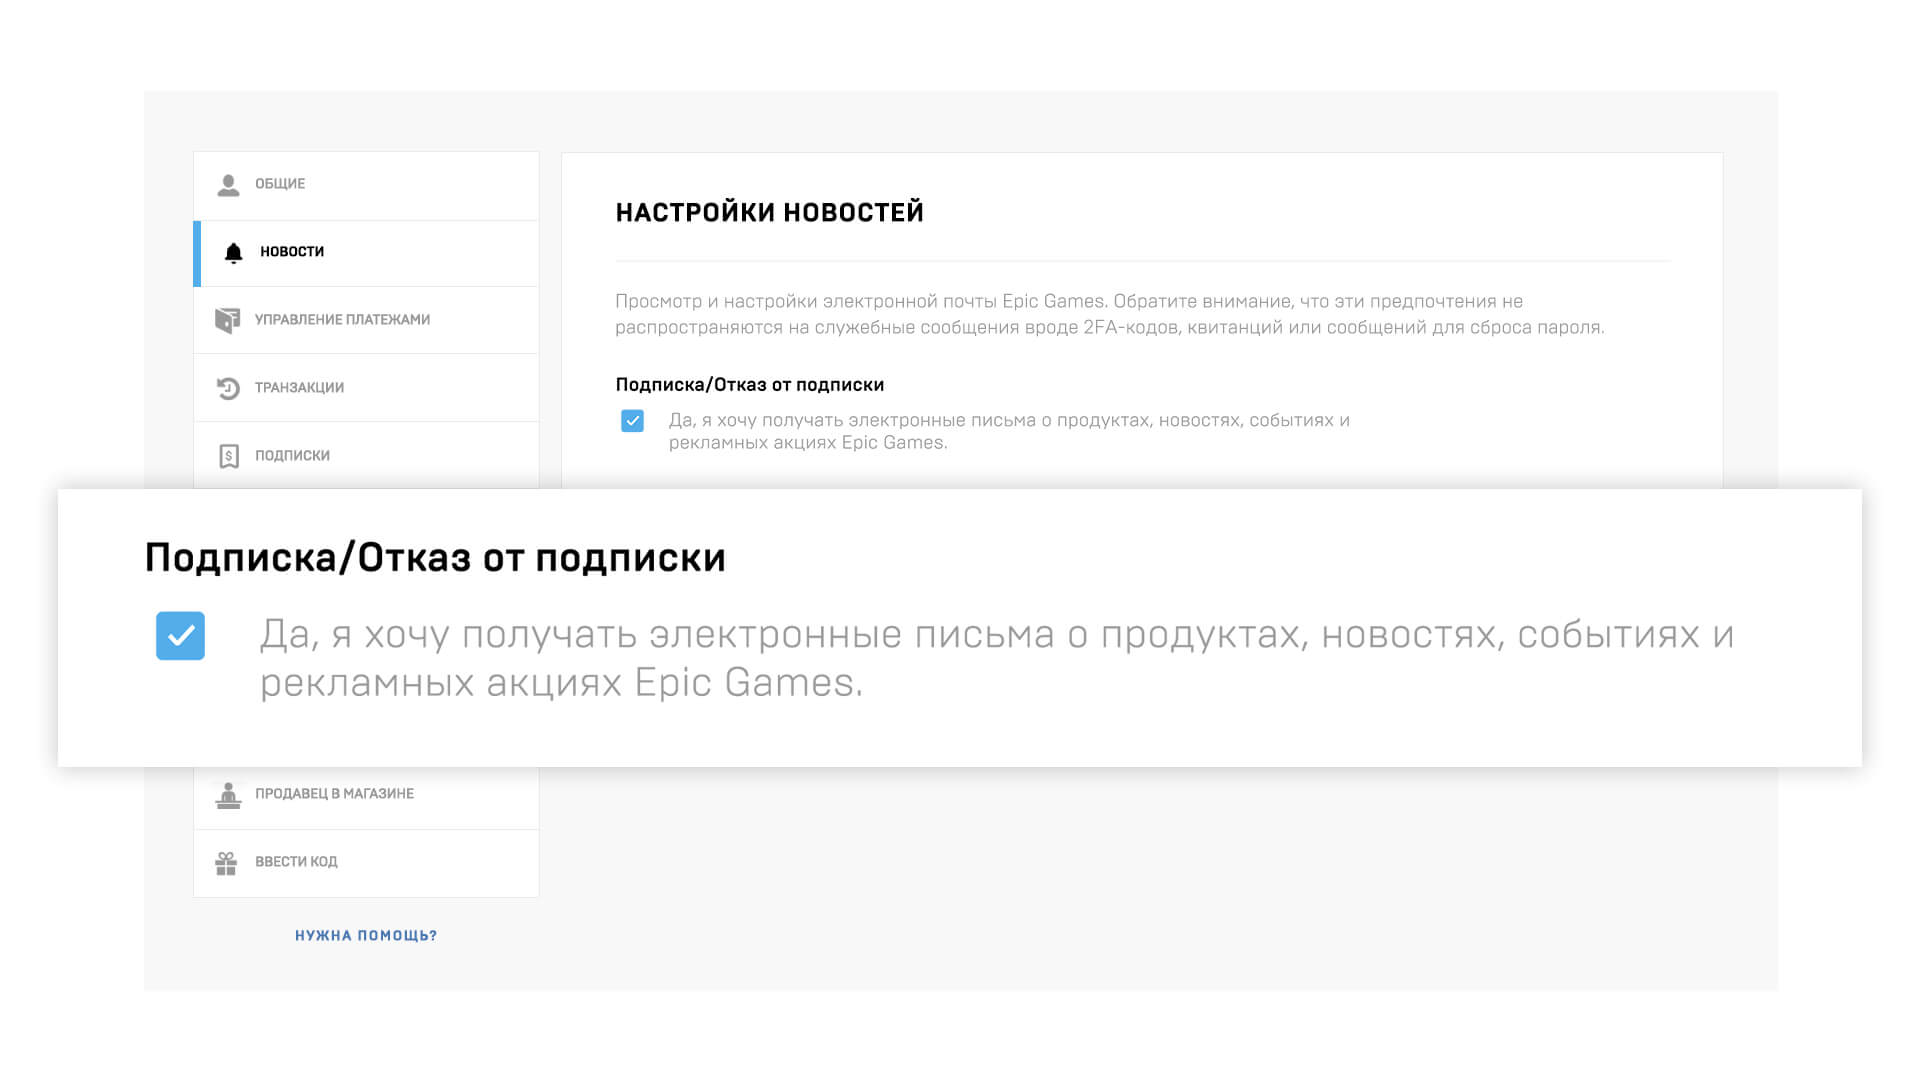 купон на 650 рублей от Epic Games 1 - Получите купон на 650 рублей от Epic Games